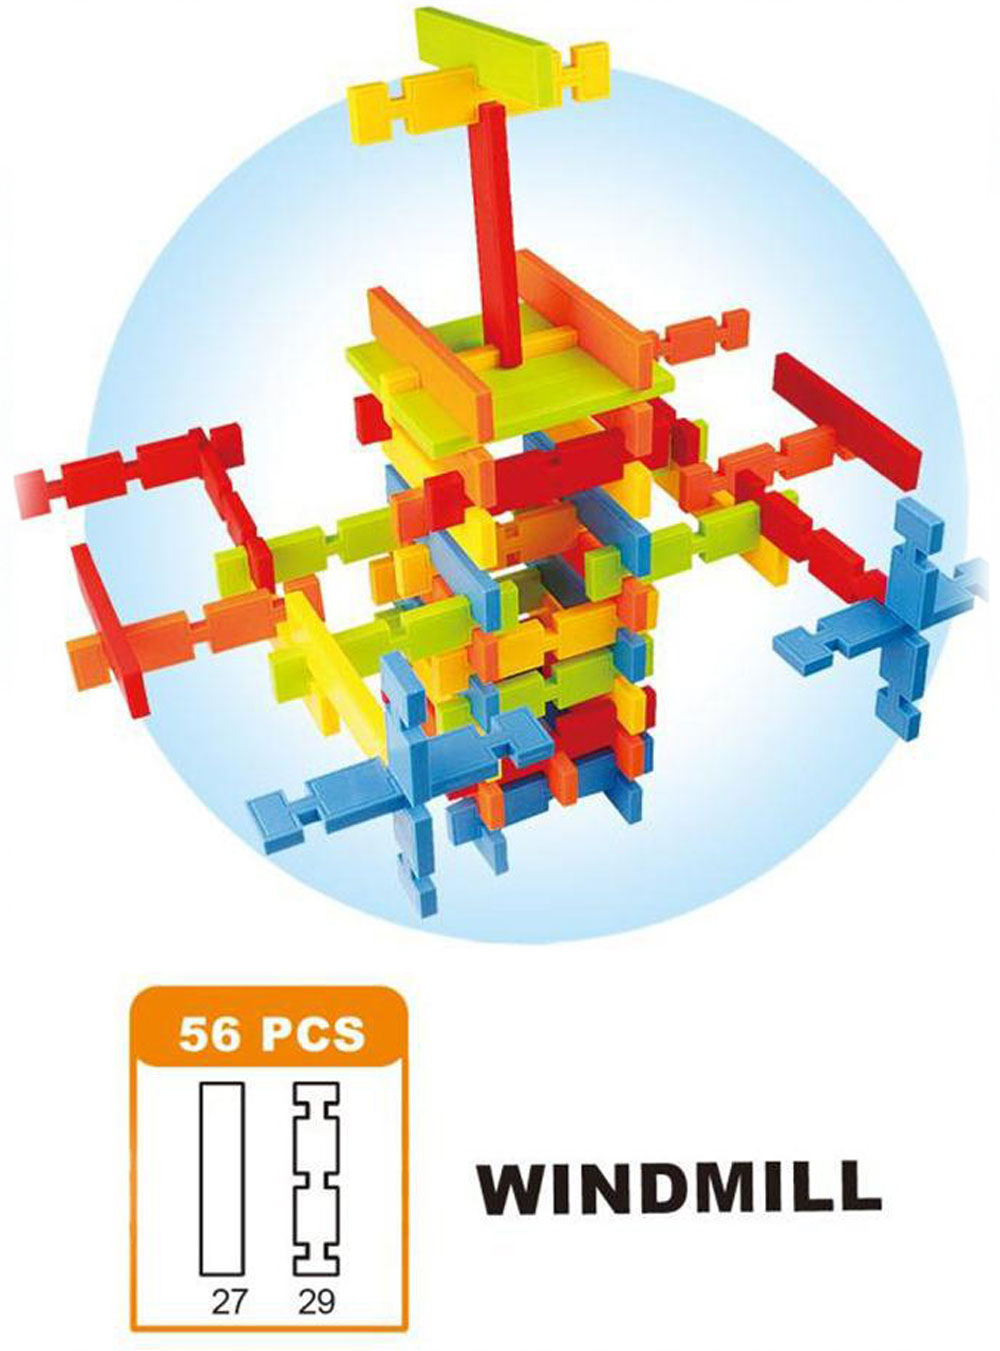 50pcs Children Colorful Building Block Toy Set